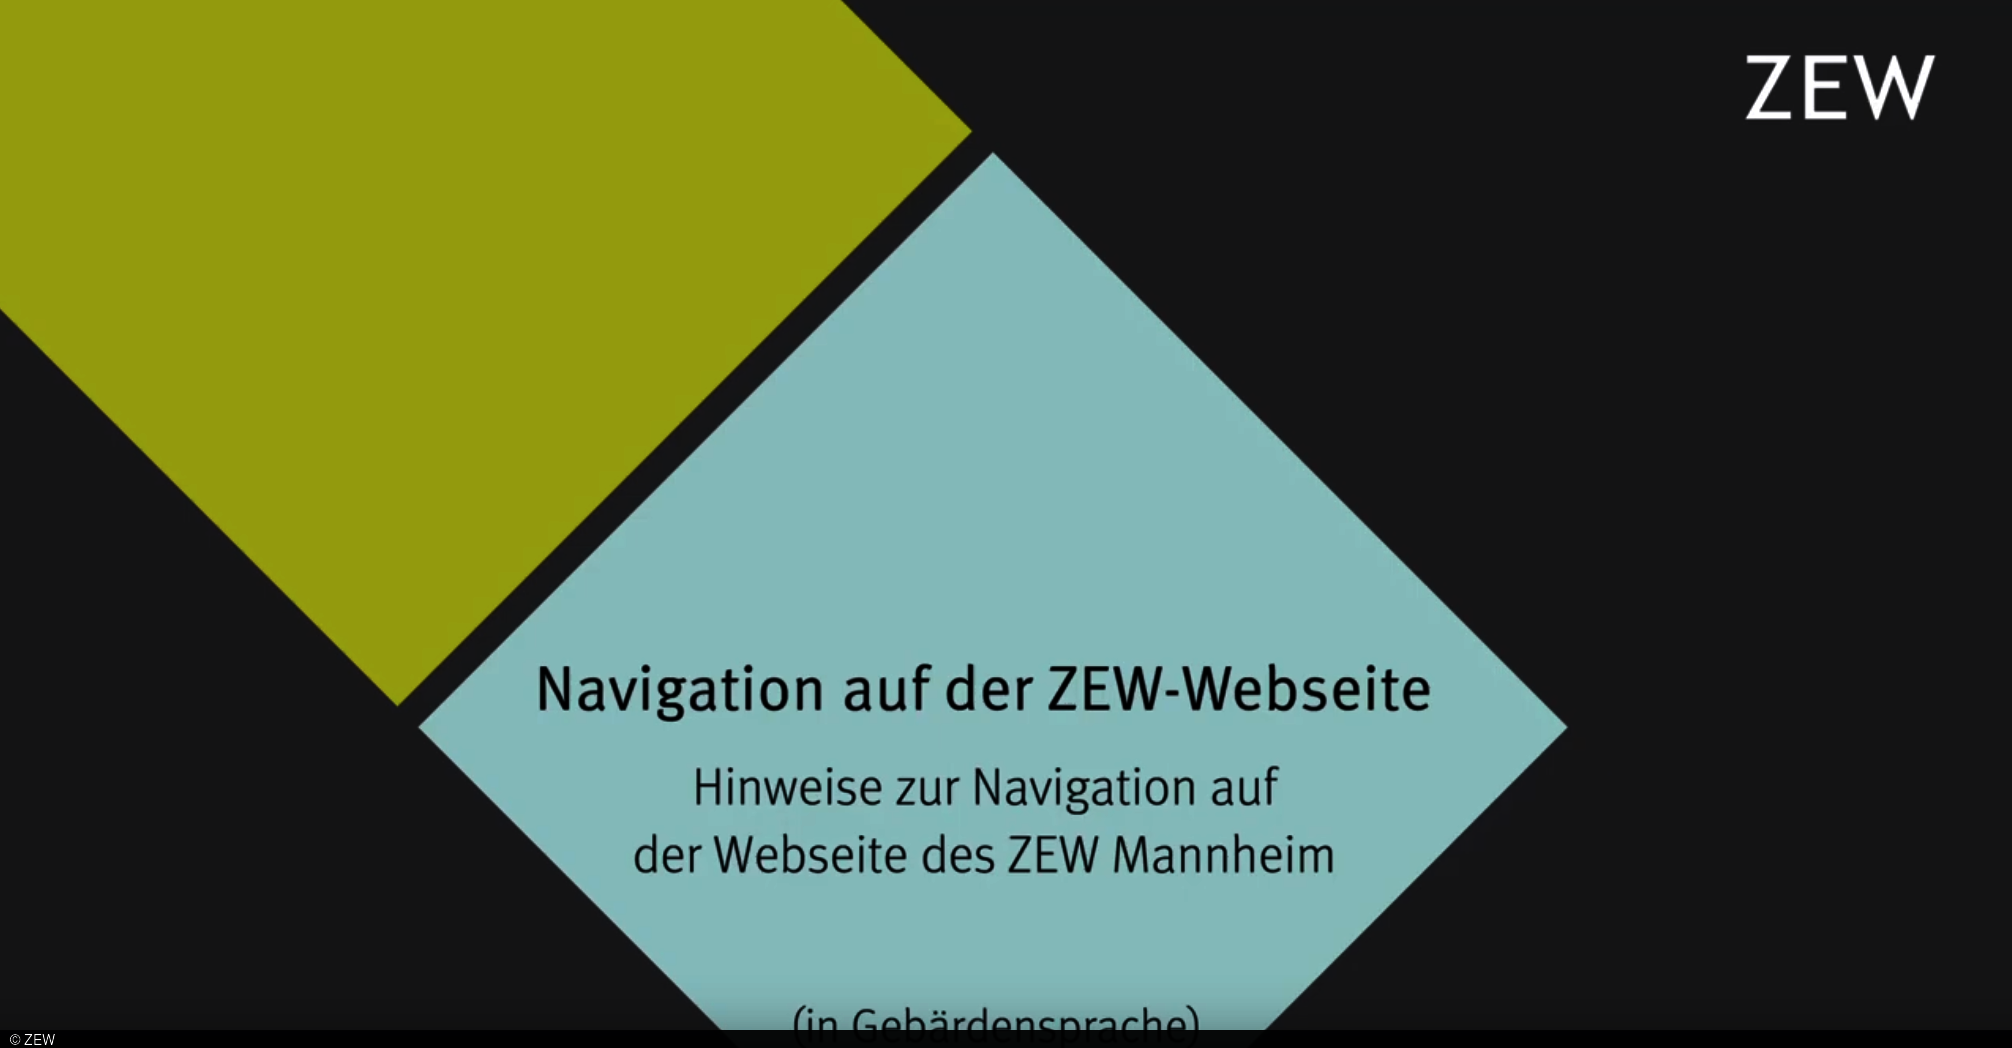 Ein Video, das in Gebärdensprache die Inhalte und Navigation auf der ZEW-Webseite erklärt